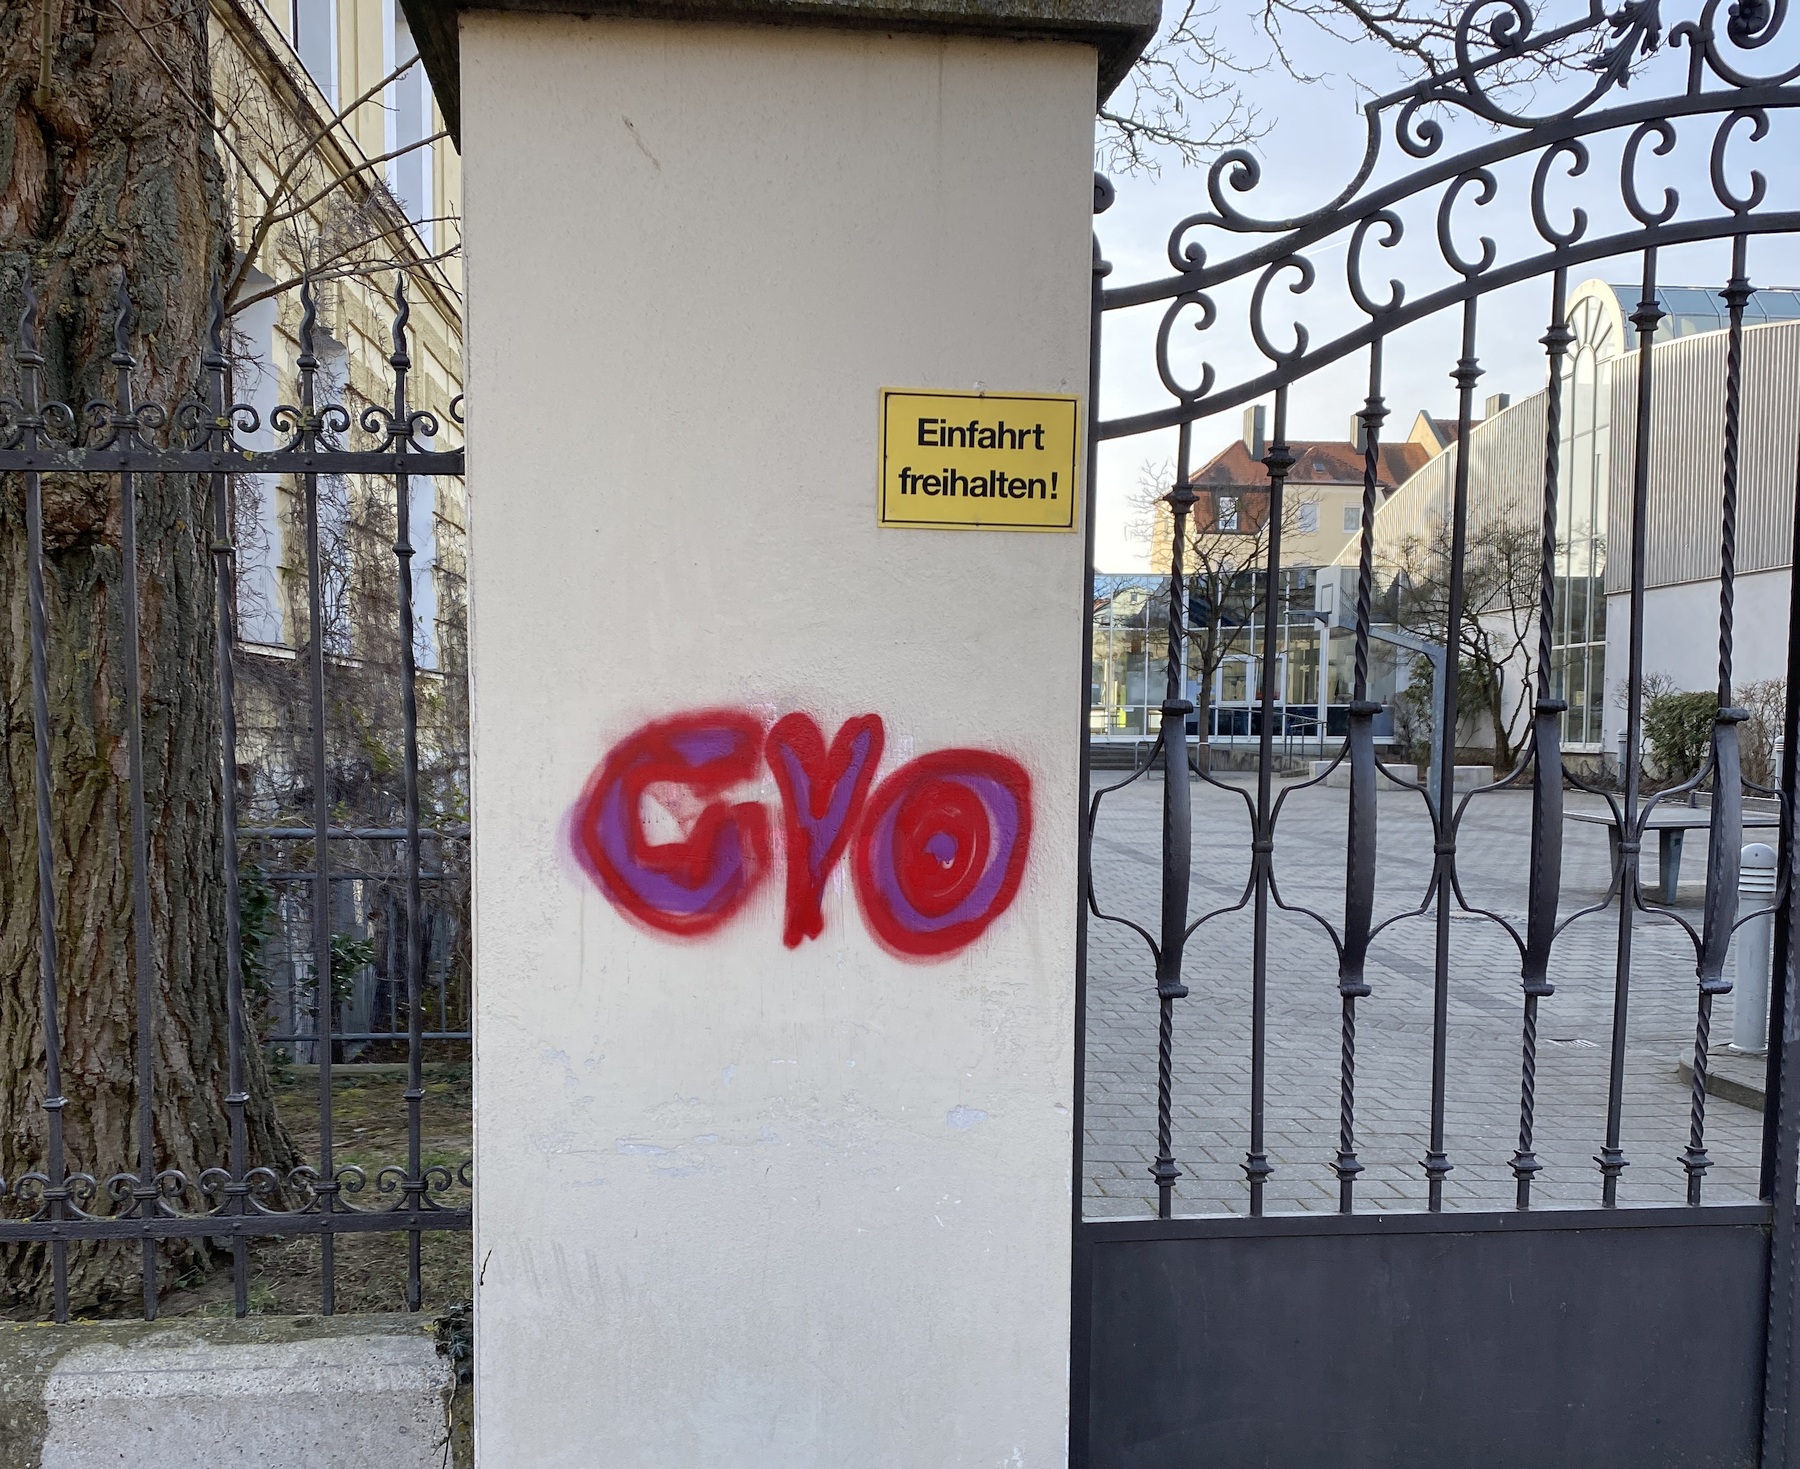 Ärger über Graffiti in Amberg